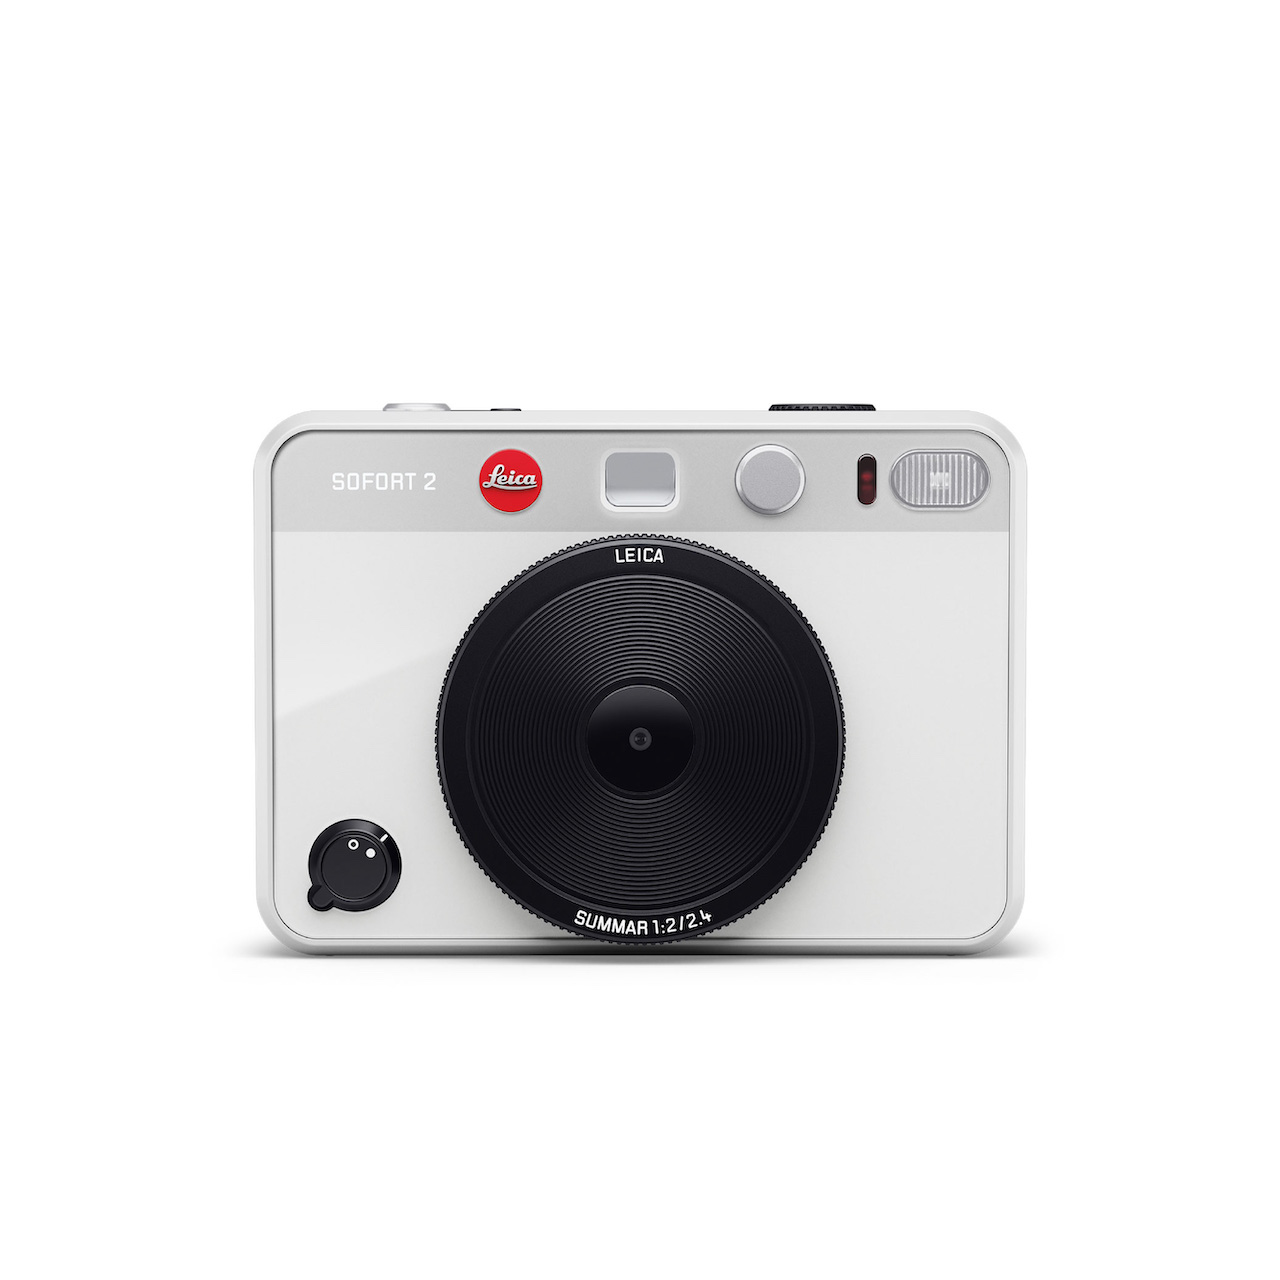 ライカ/ゾフォート2/ホワイト / Leica SOFORT 2 White - ENZO SHOP ...